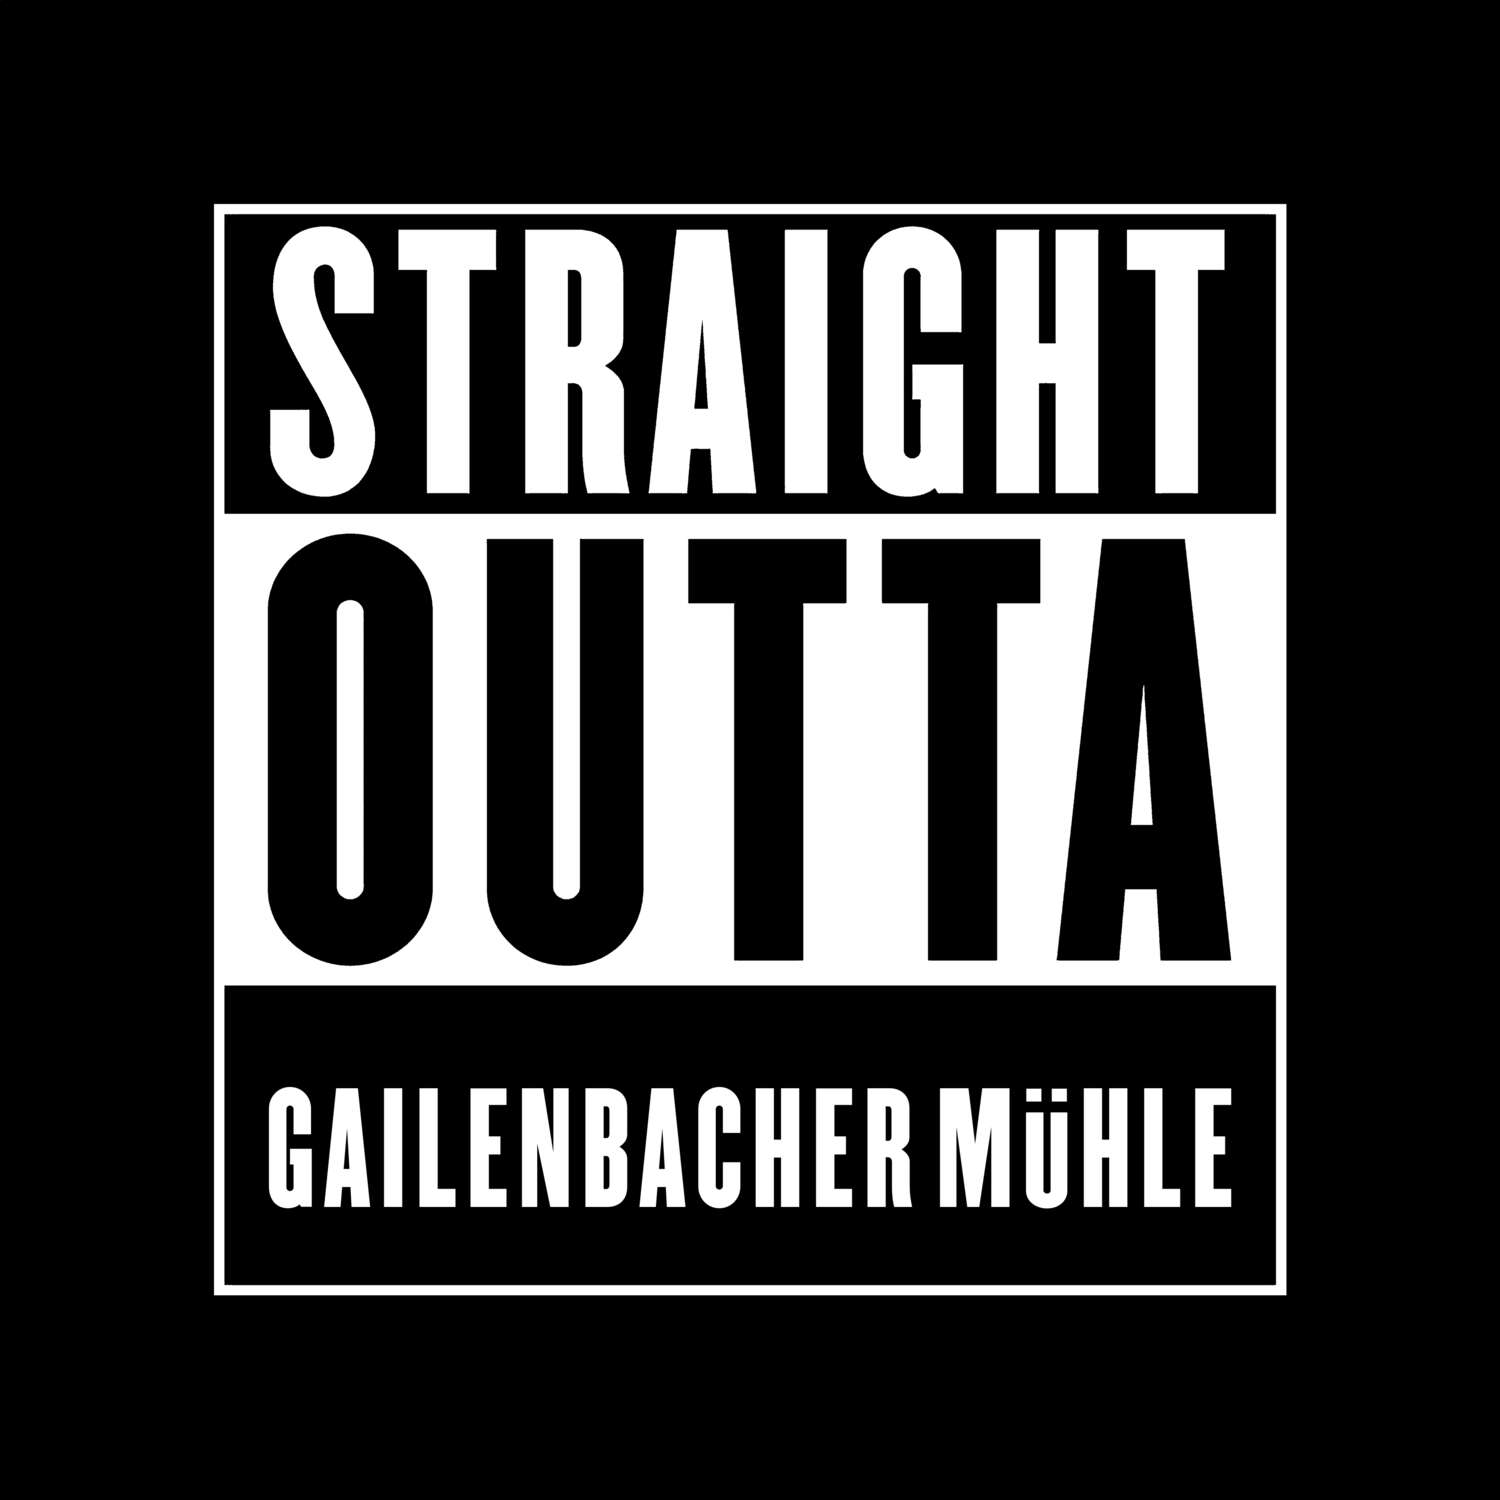 Gailenbacher Mühle T-Shirt »Straight Outta«